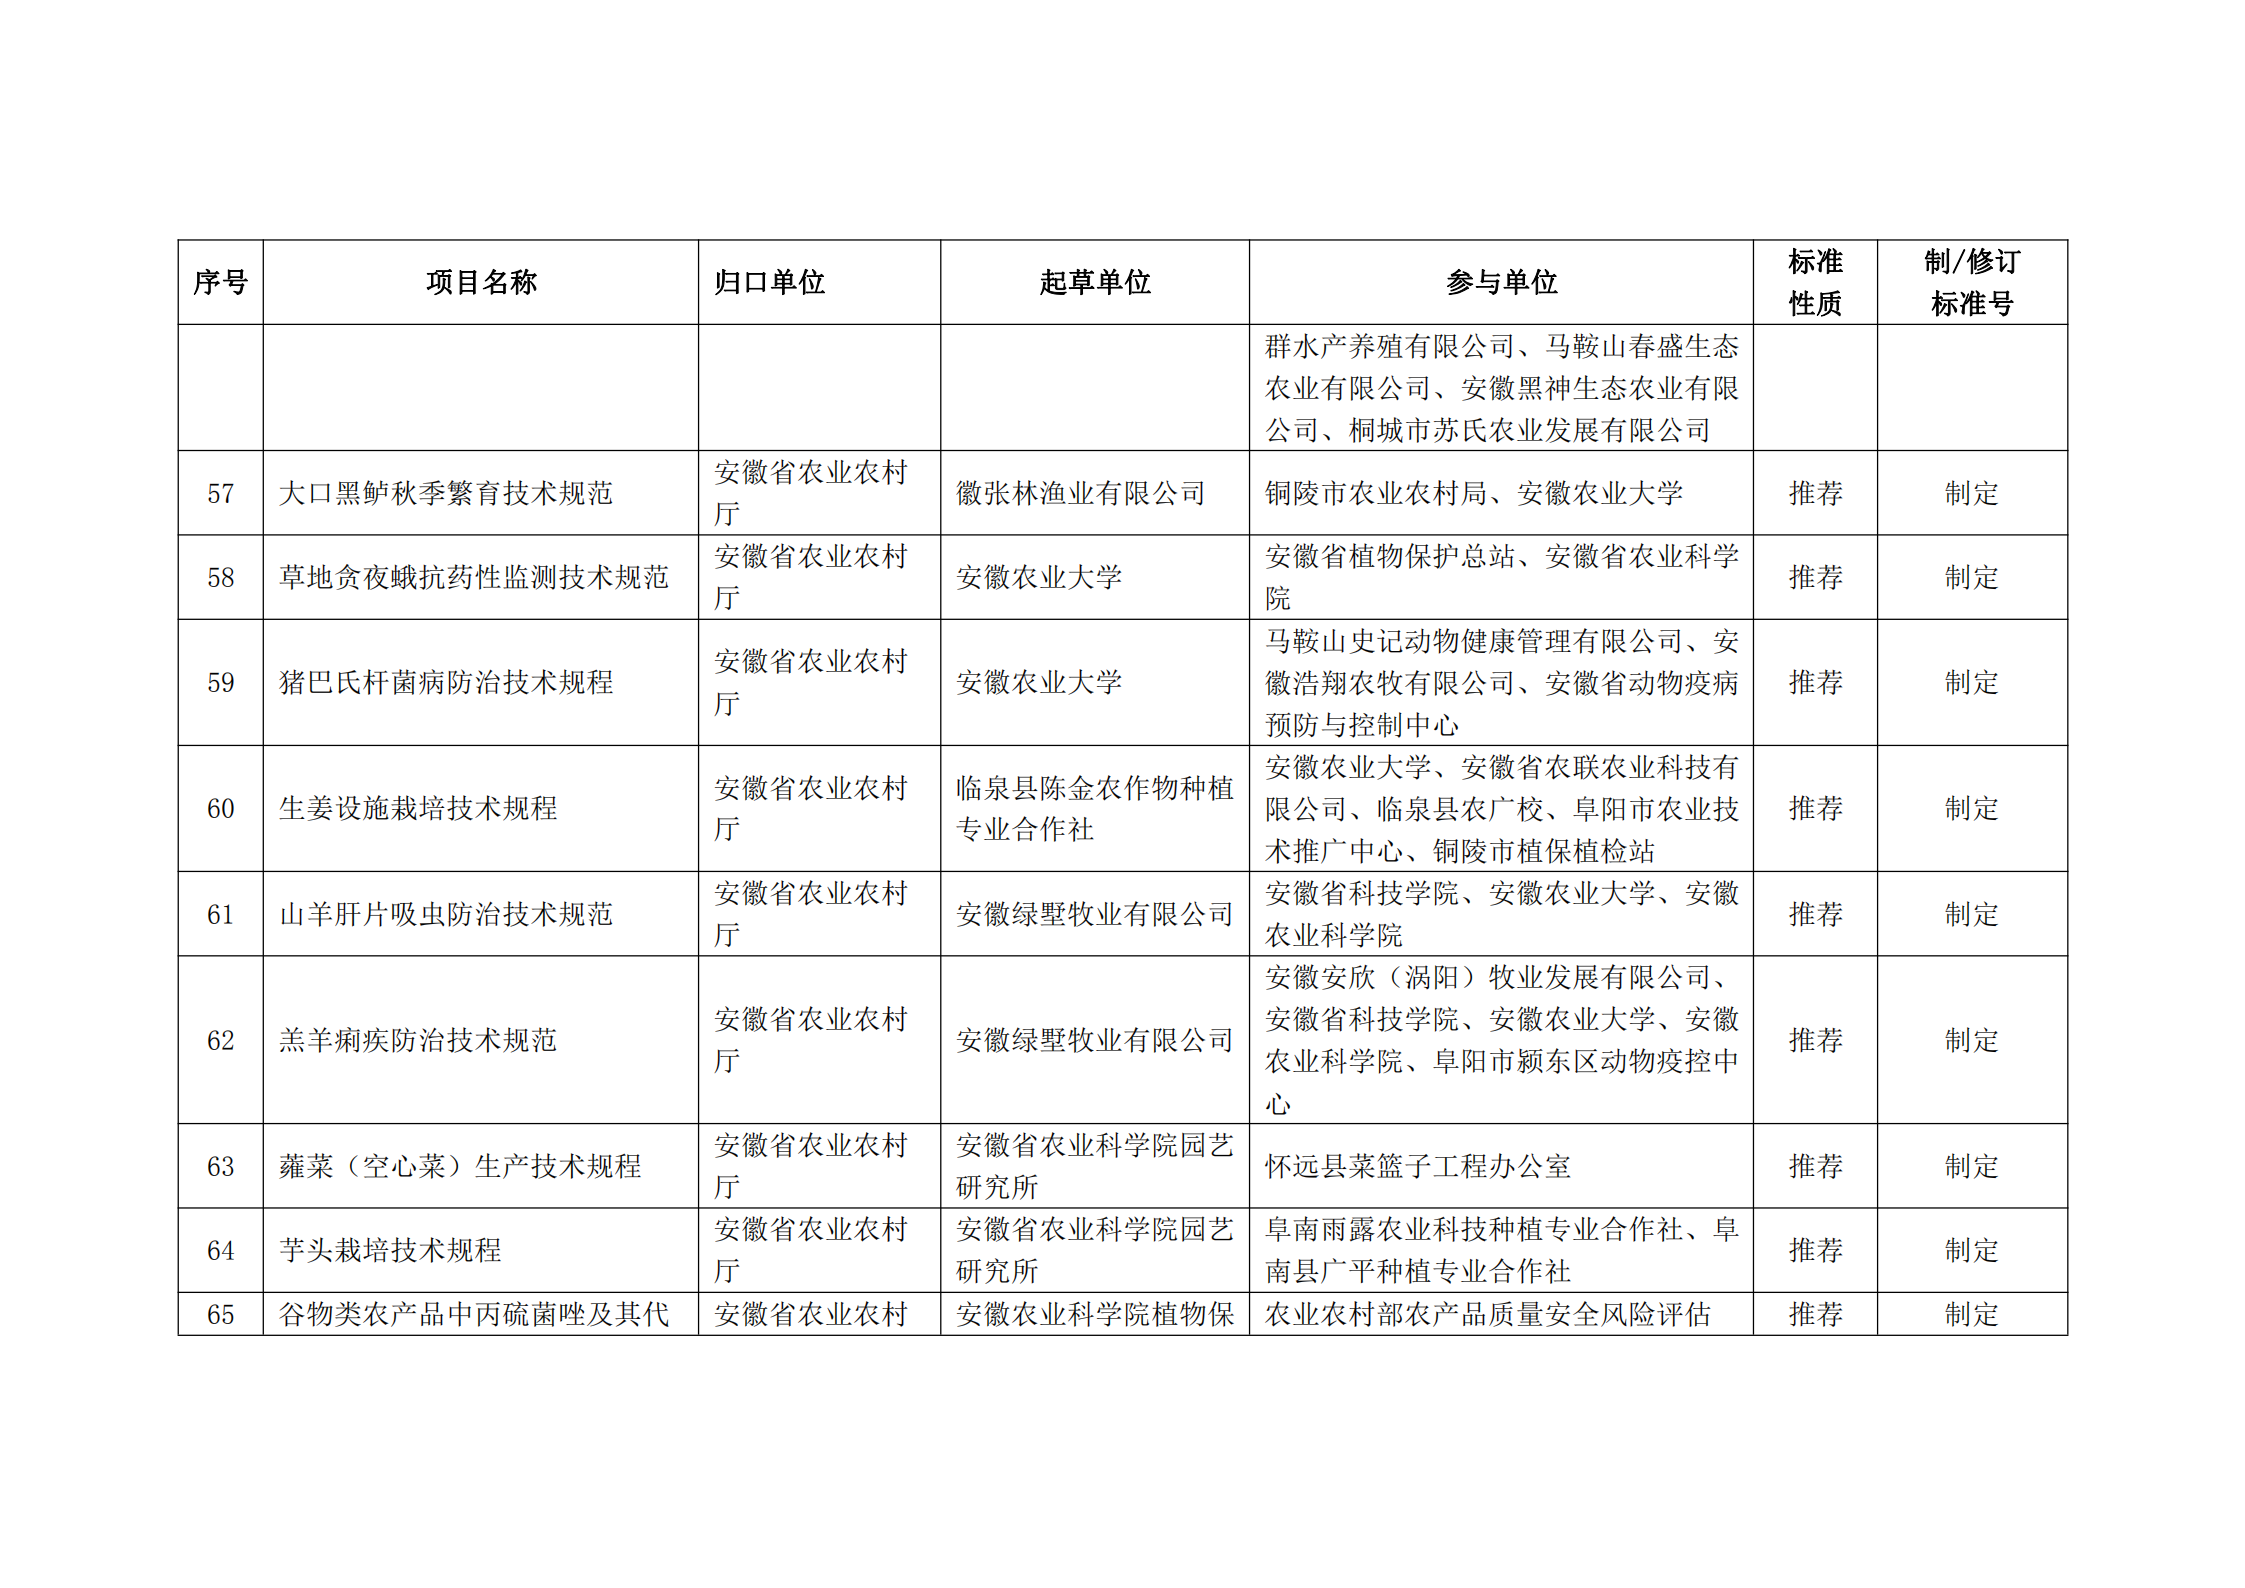 2020 年第二批安徽省地方标准制、修订计划项目汇总表(图7)